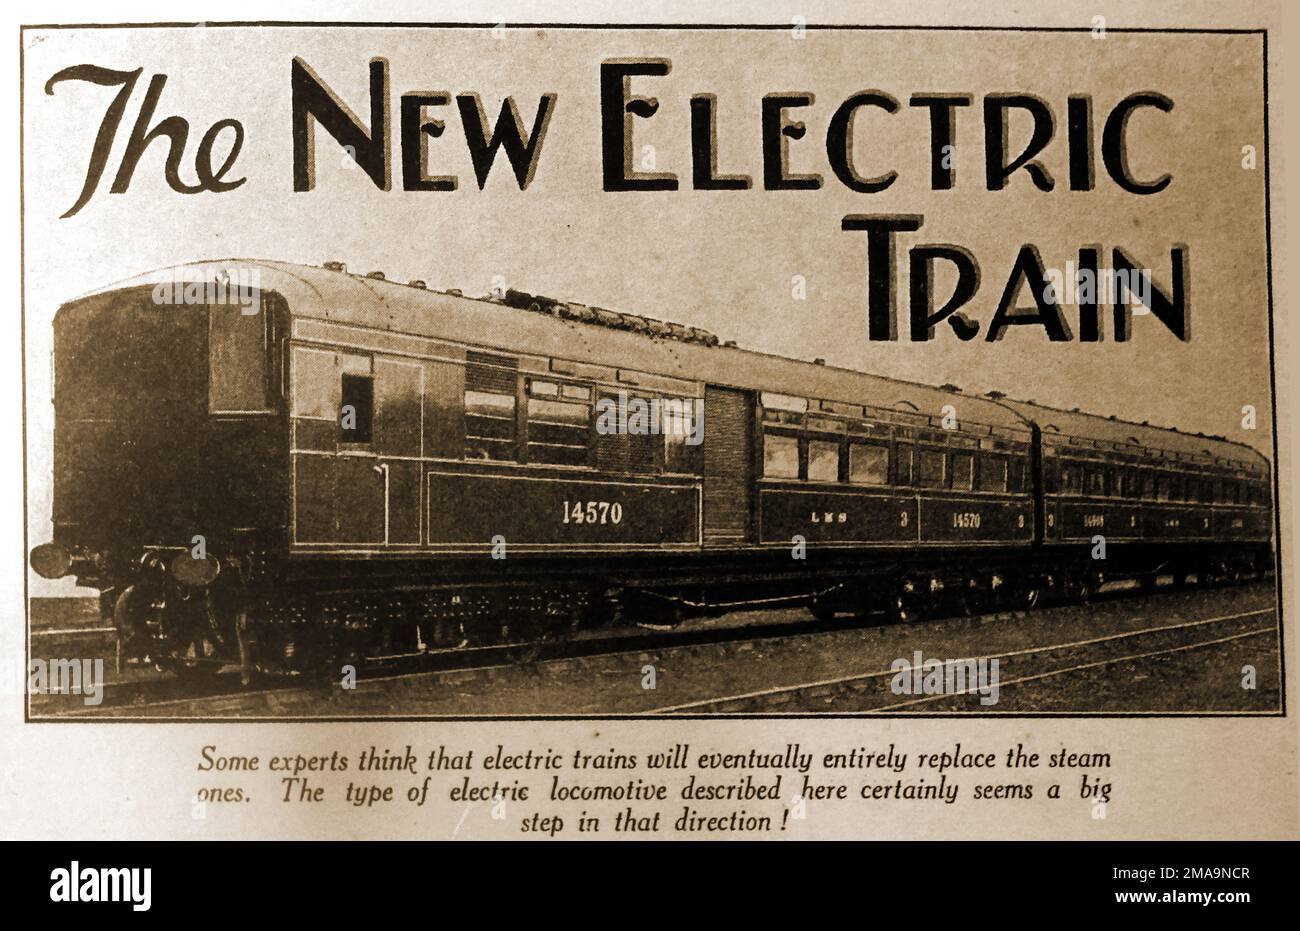 Une image de 1930 du train électrique nouvellement introduit, spéculant il pourrait remplacer la vapeur. Banque D'Images